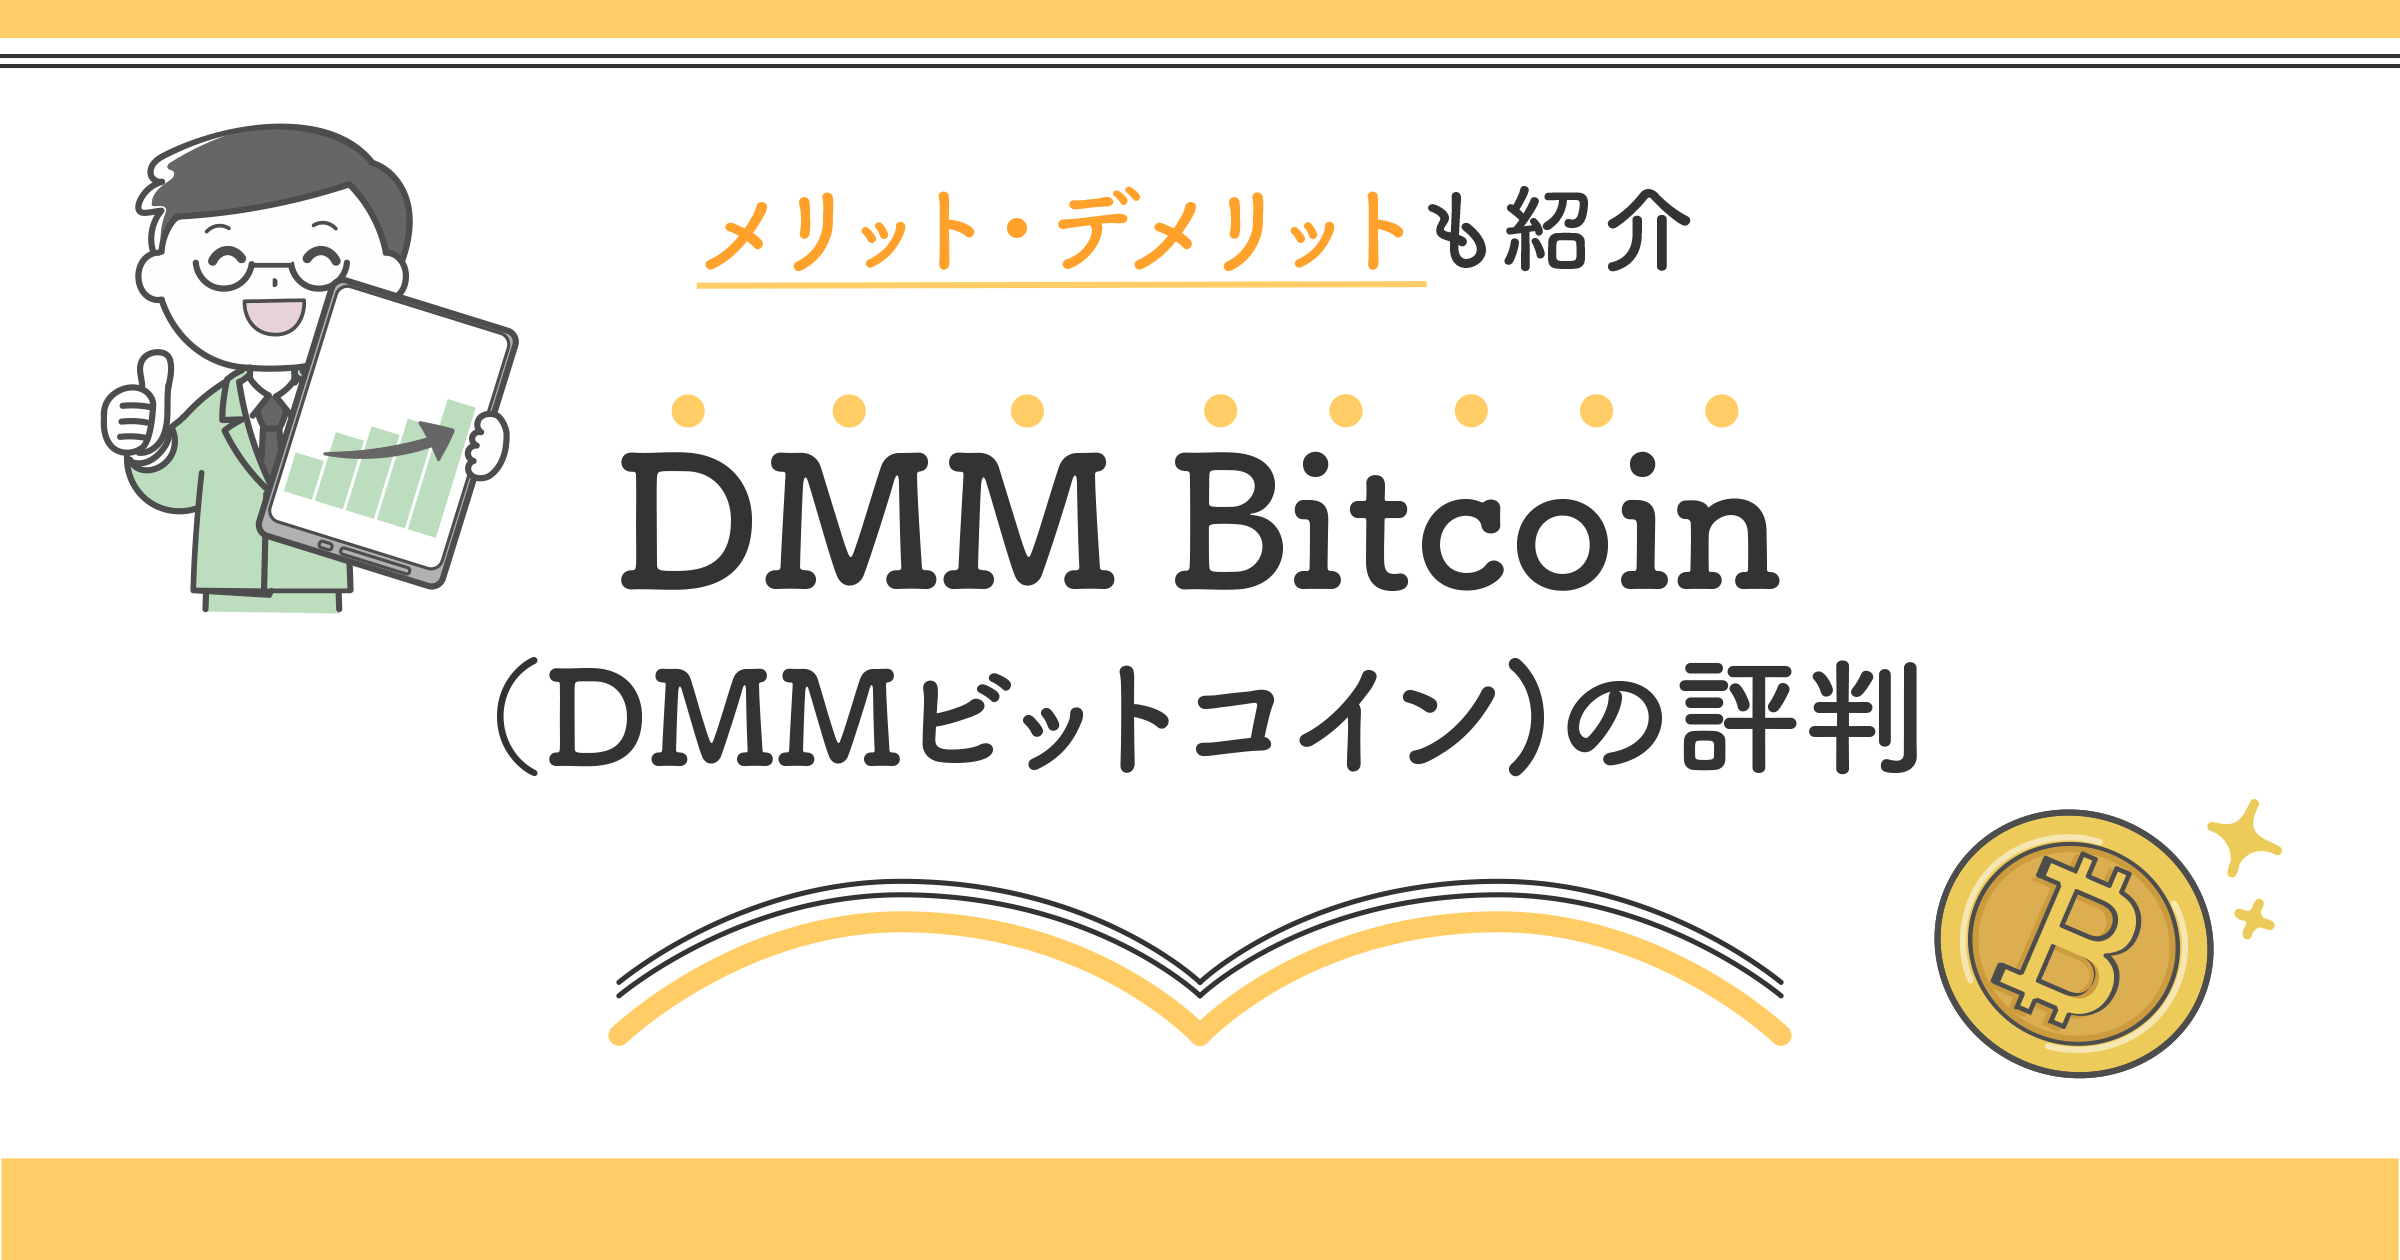 DMM Bitcoin(DMMビットコイン)の口コミを紹介！評判から分かるメリットとデメリットを徹底解剖